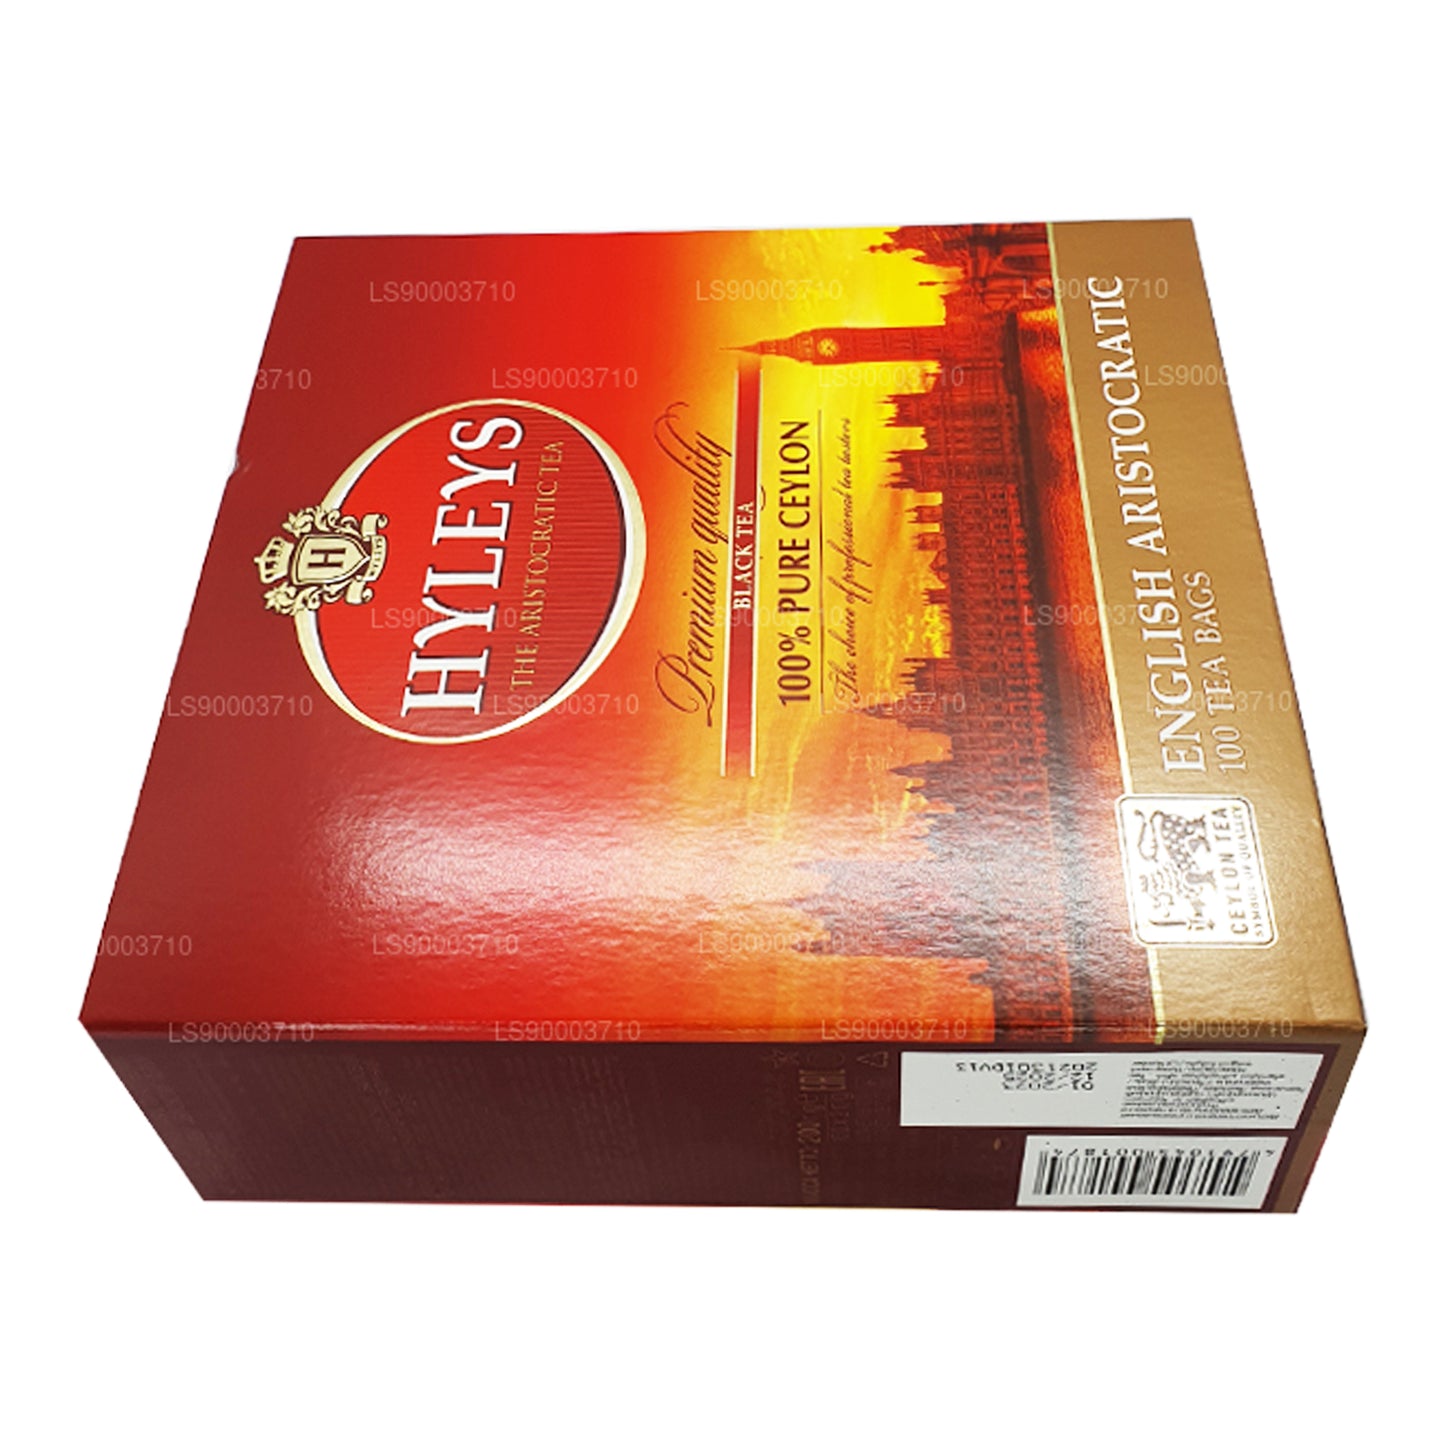 HYLEYS Schwarzer Tee in Premium-Qualität, 100 Teebeutel (200 g)